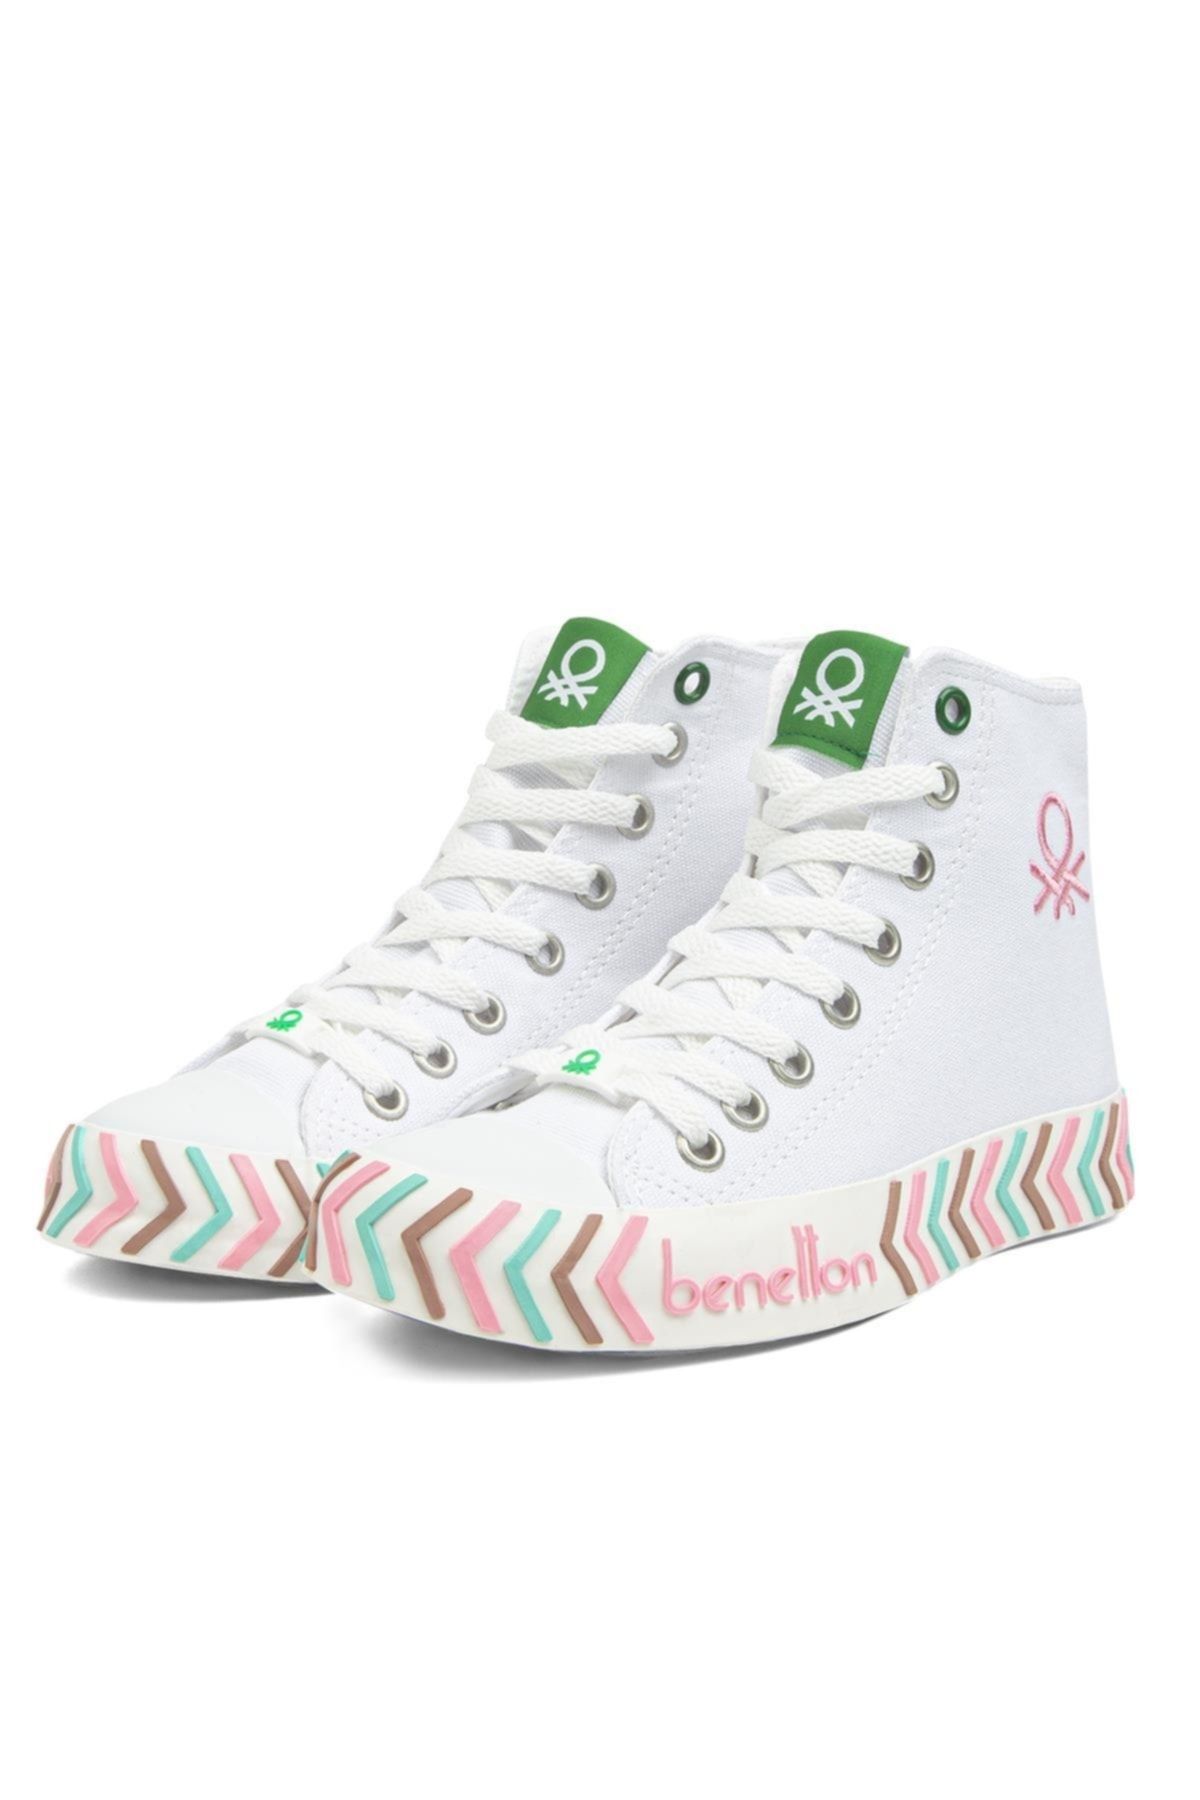 Benetton ® | Bn-30625-3374 Beyaz Pembe - Kadın Spor Ayakkabı